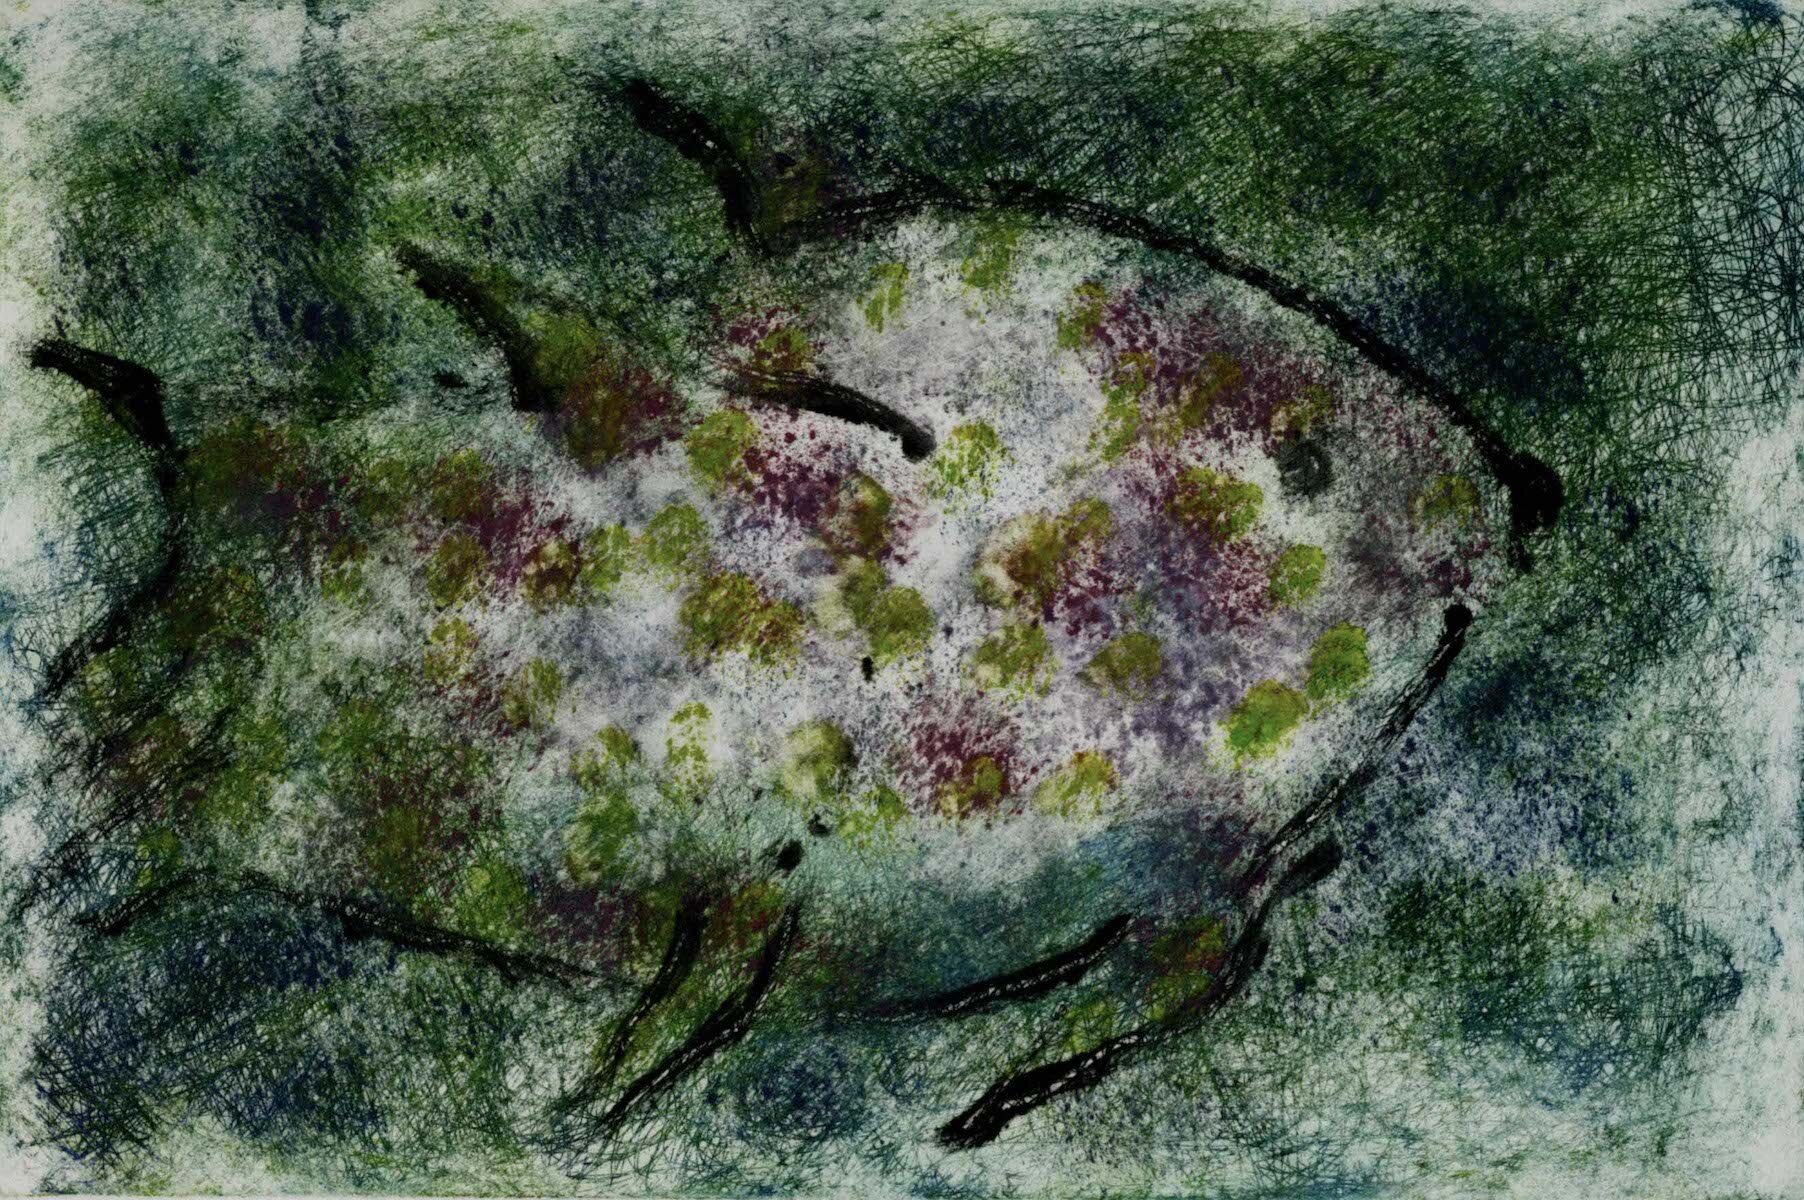 Fish in Green Sea